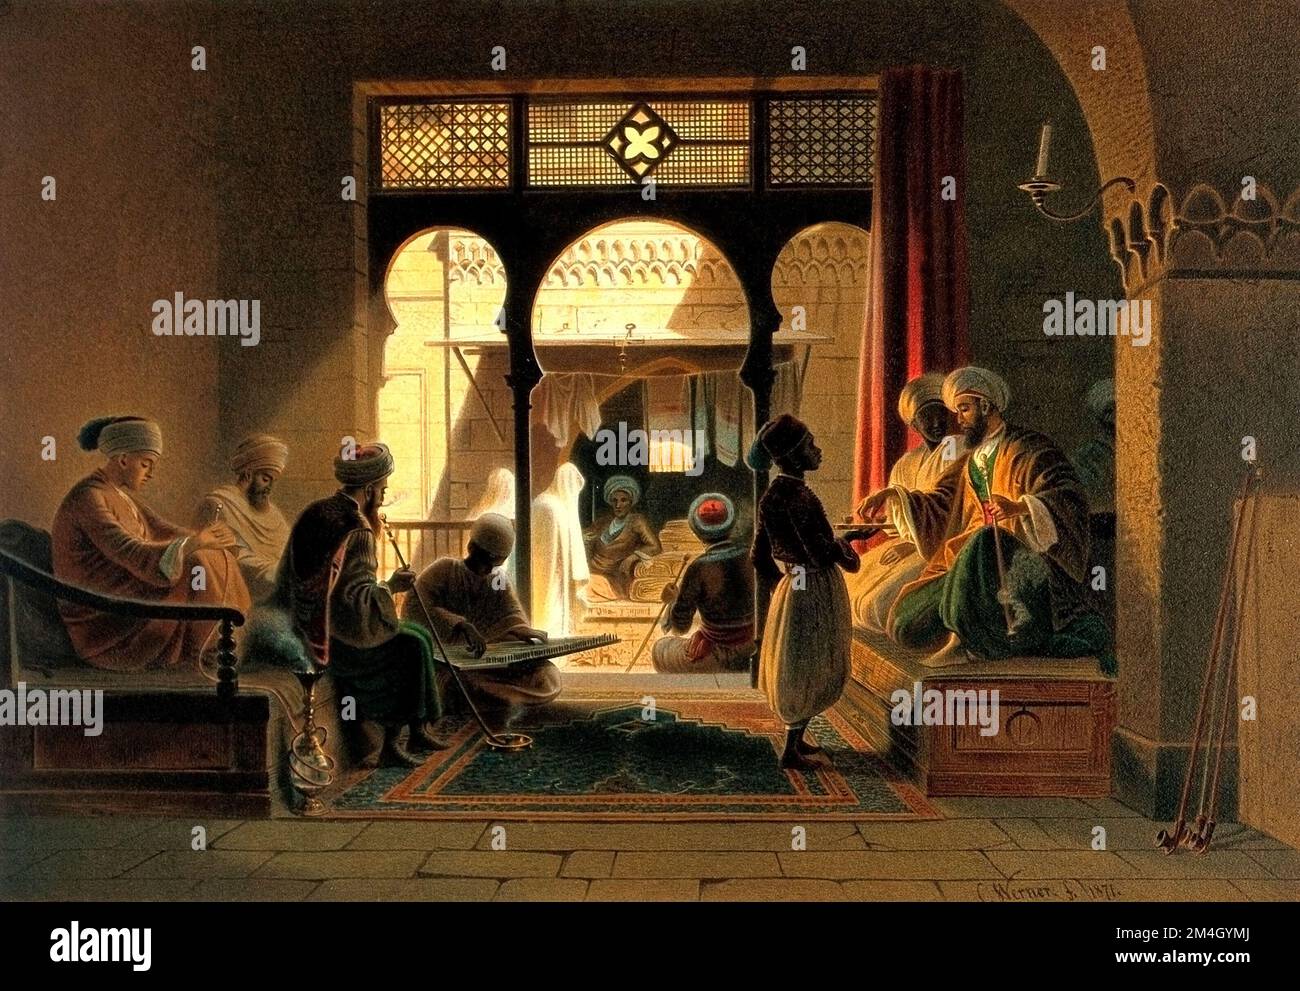 Ägypten Kairo: Ein Kaffeehaus mit Männern, die auf Holzbänken sitzen, um zu rauchen und zu trinken. Farblithograf von G.W. Seitz, ca. 1878, nach Carl Werner, 1871. Stockfoto